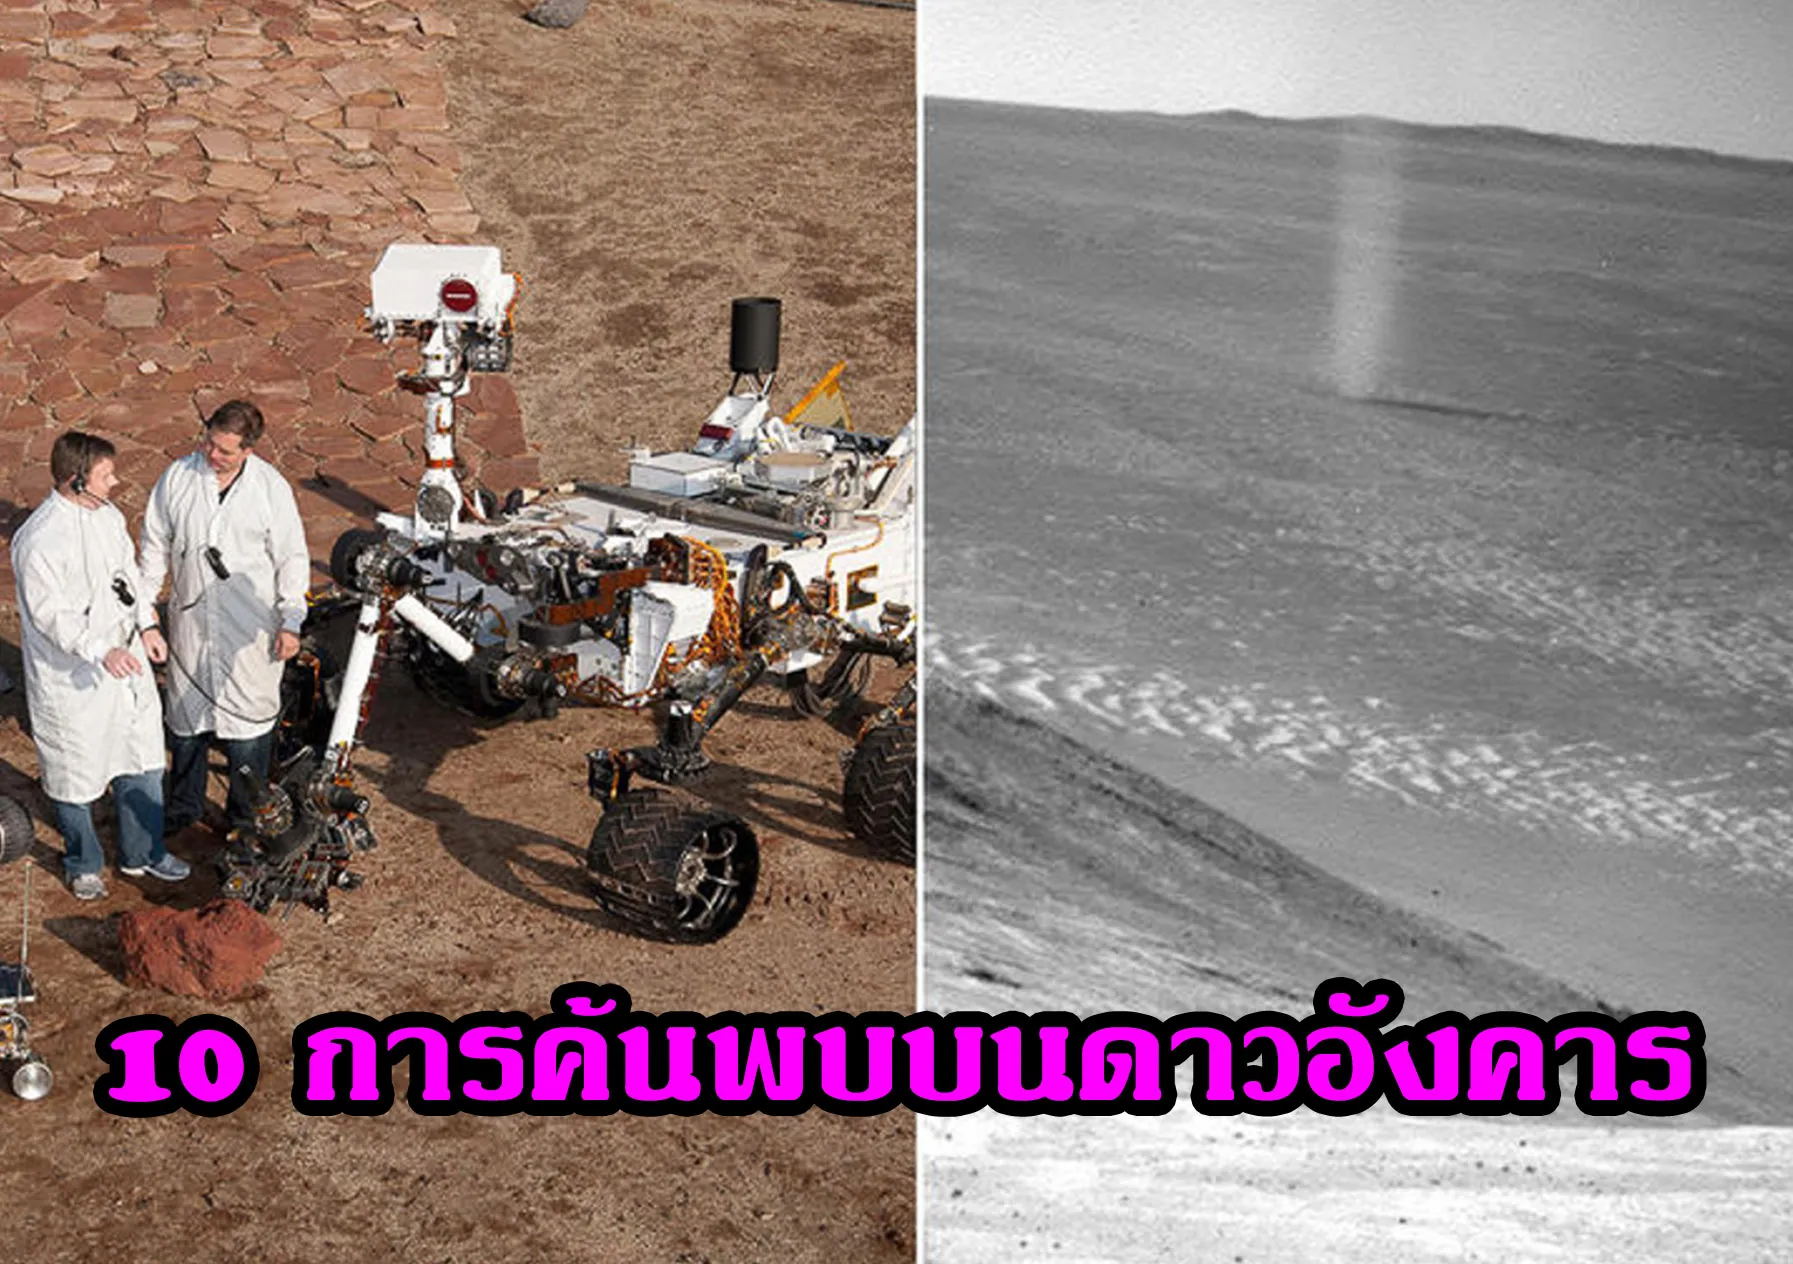 10การค้นพบบนดาวอังคาร